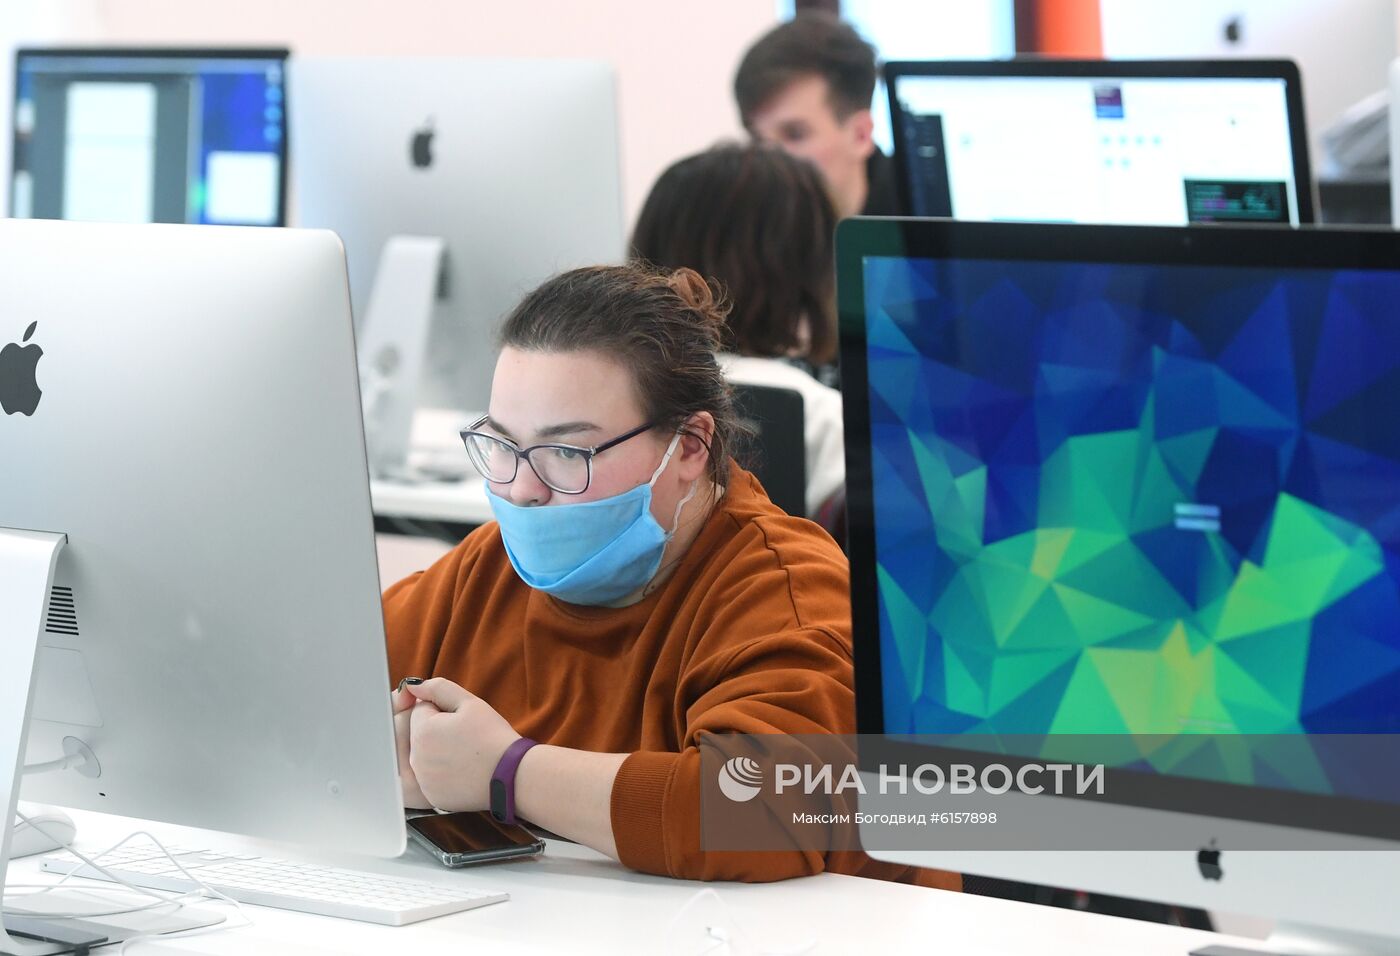 Образовательный IT-проект "Школа-21" в Казани